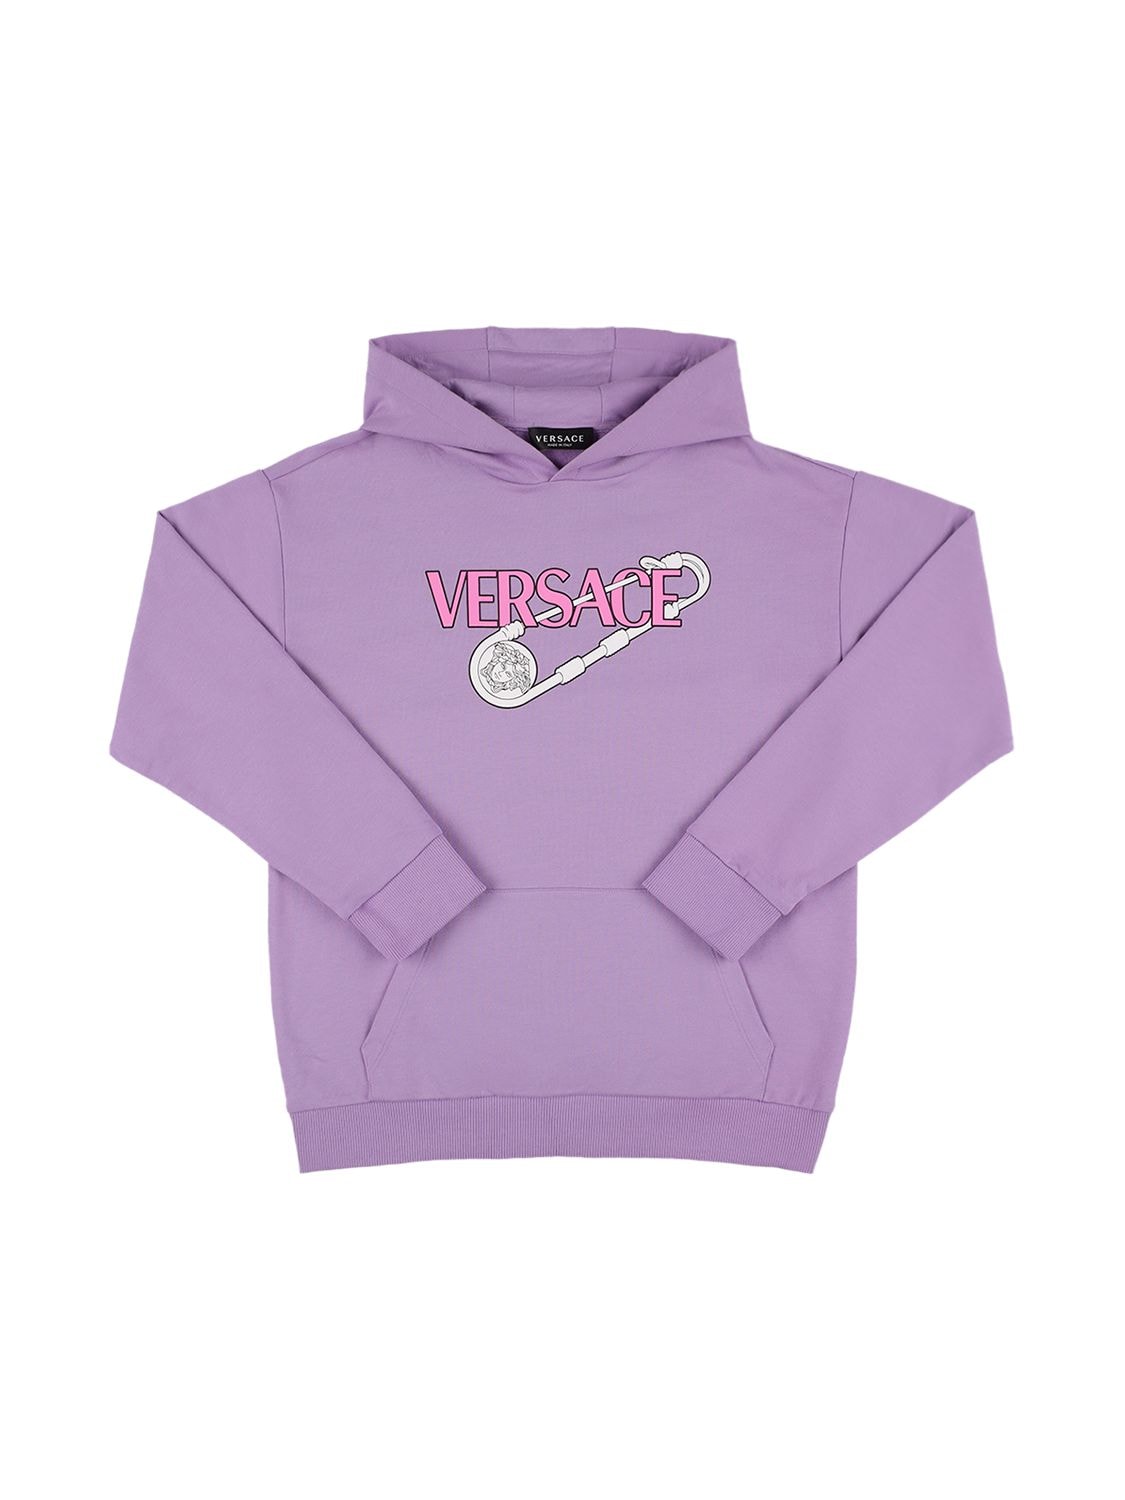 Versace Printed Cotton Sweatshirt Hoodie In Light Purple